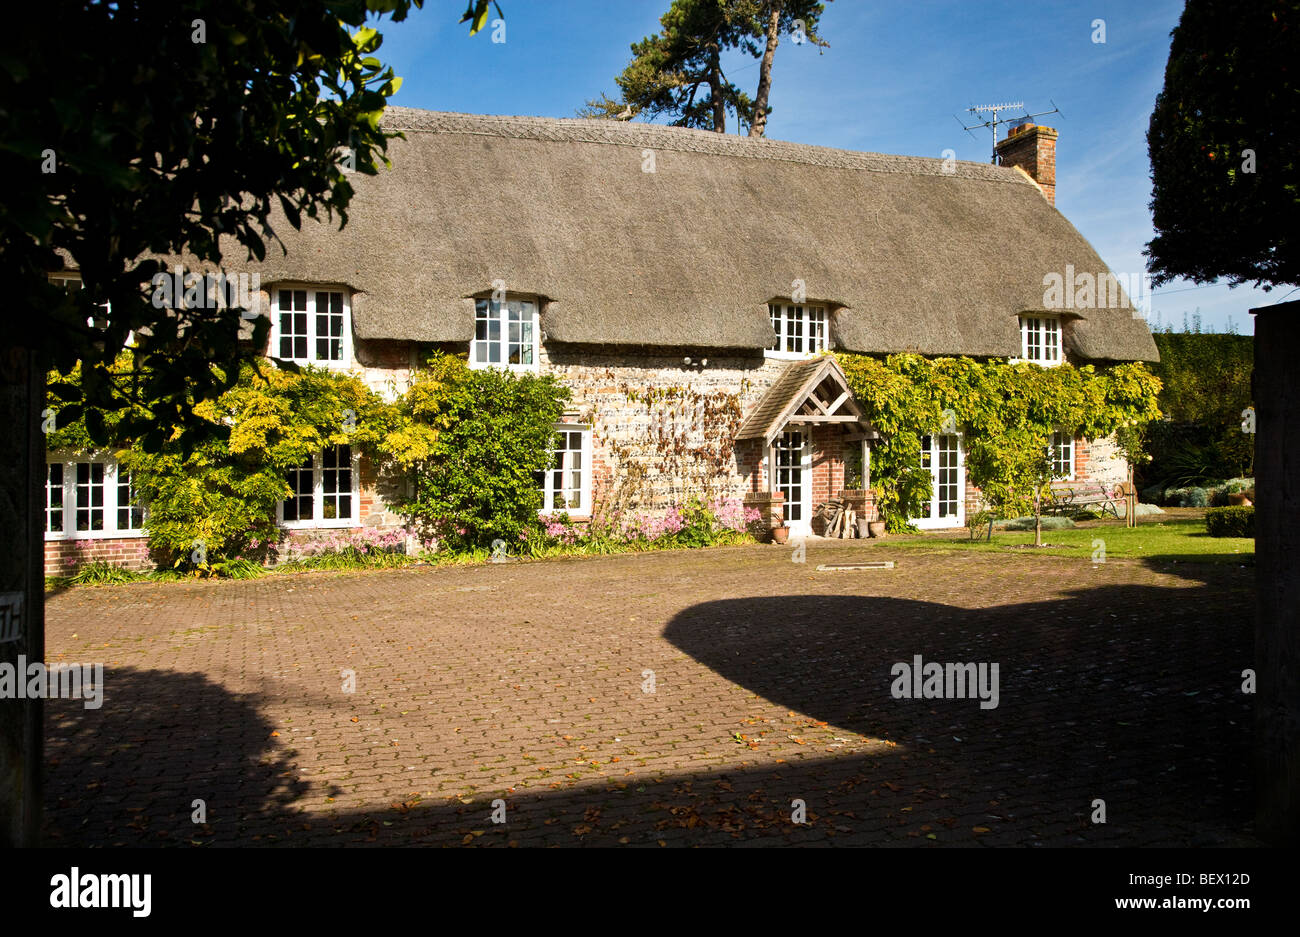 Anglais typique en pierre de pays de chaume village cottage à Ogbourne St George dans le Wiltshire, England, UK Banque D'Images